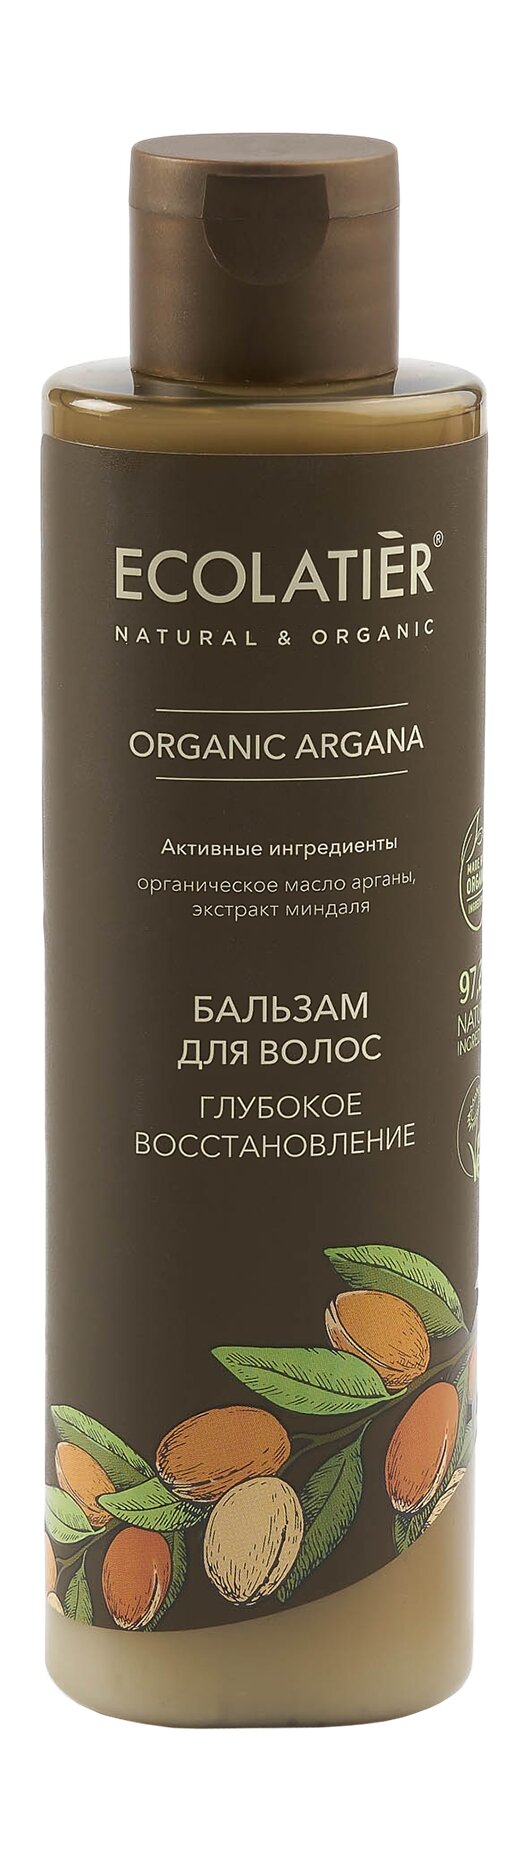 ECOLATIER Бальзам для волос Глубокое восстановление Organic Argana, 250 мл